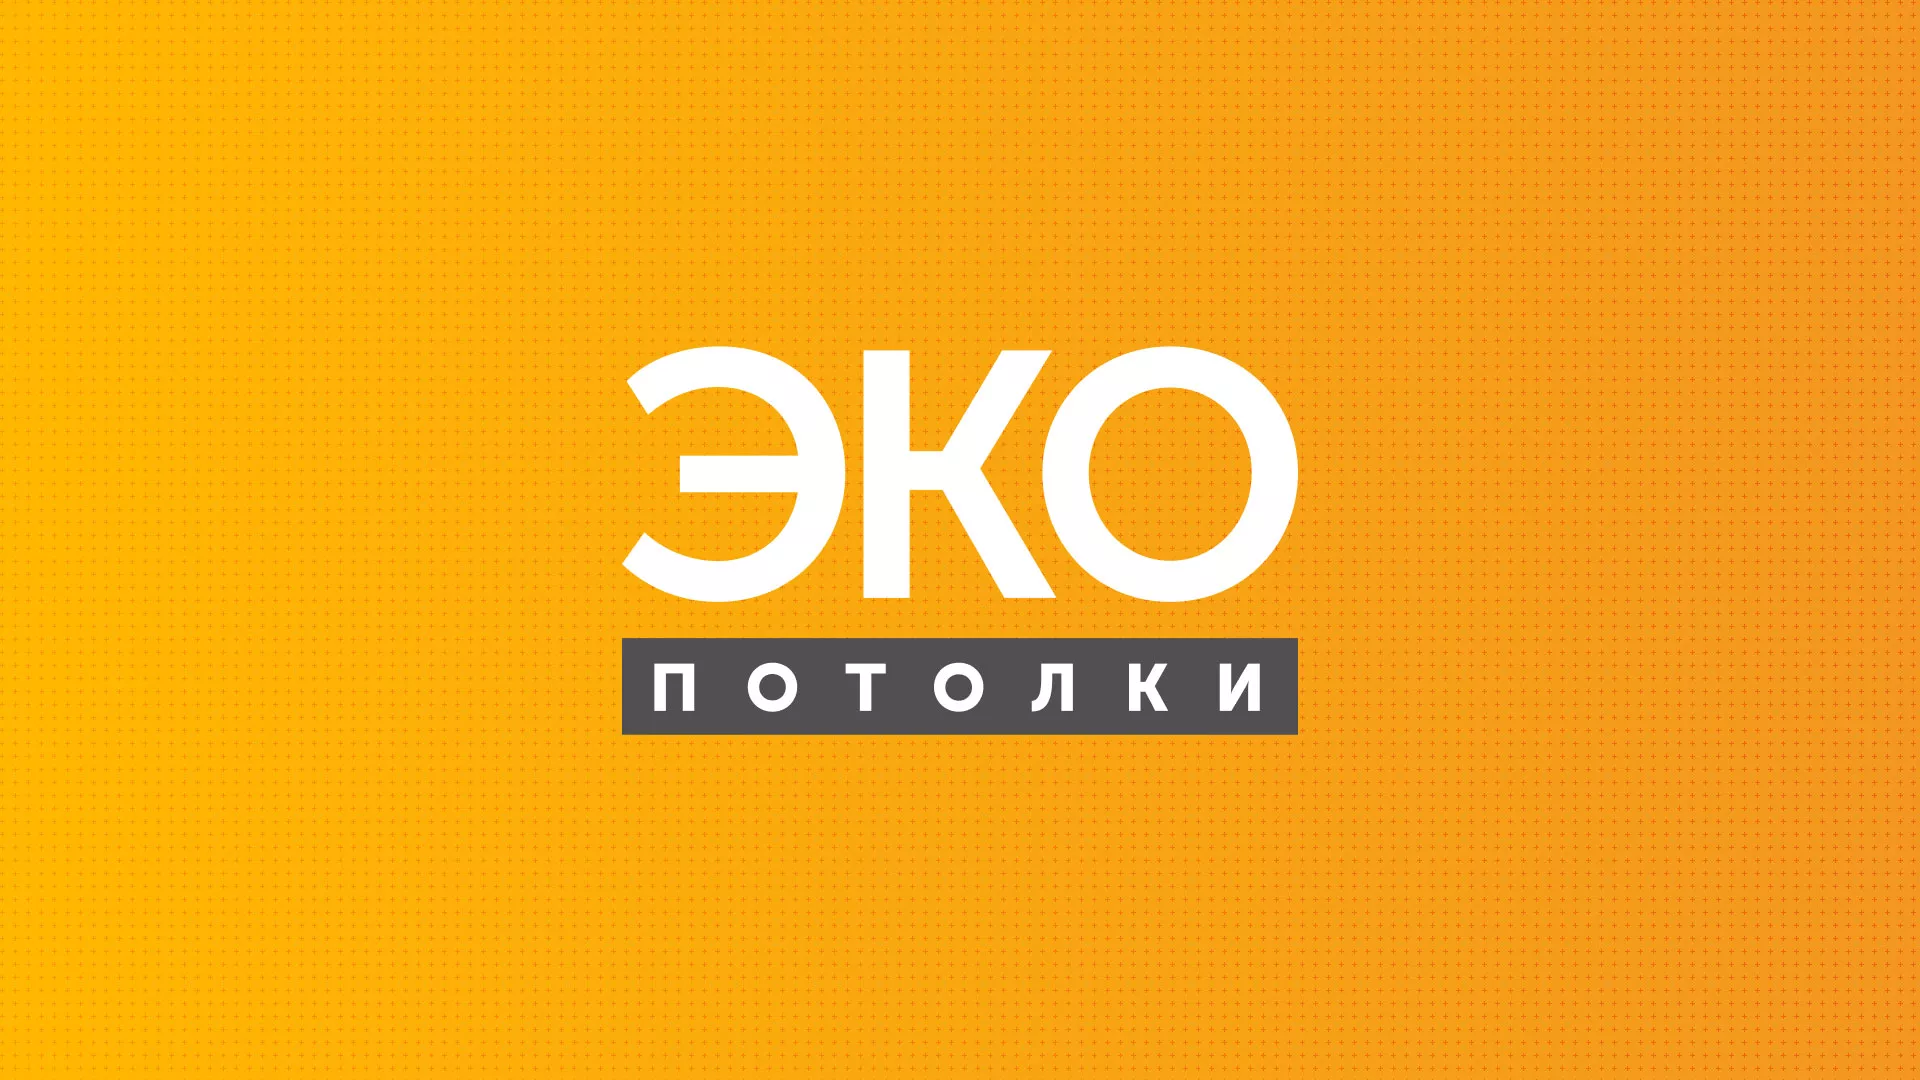 Разработка сайта по натяжным потолкам «Эко Потолки» в Рыльске